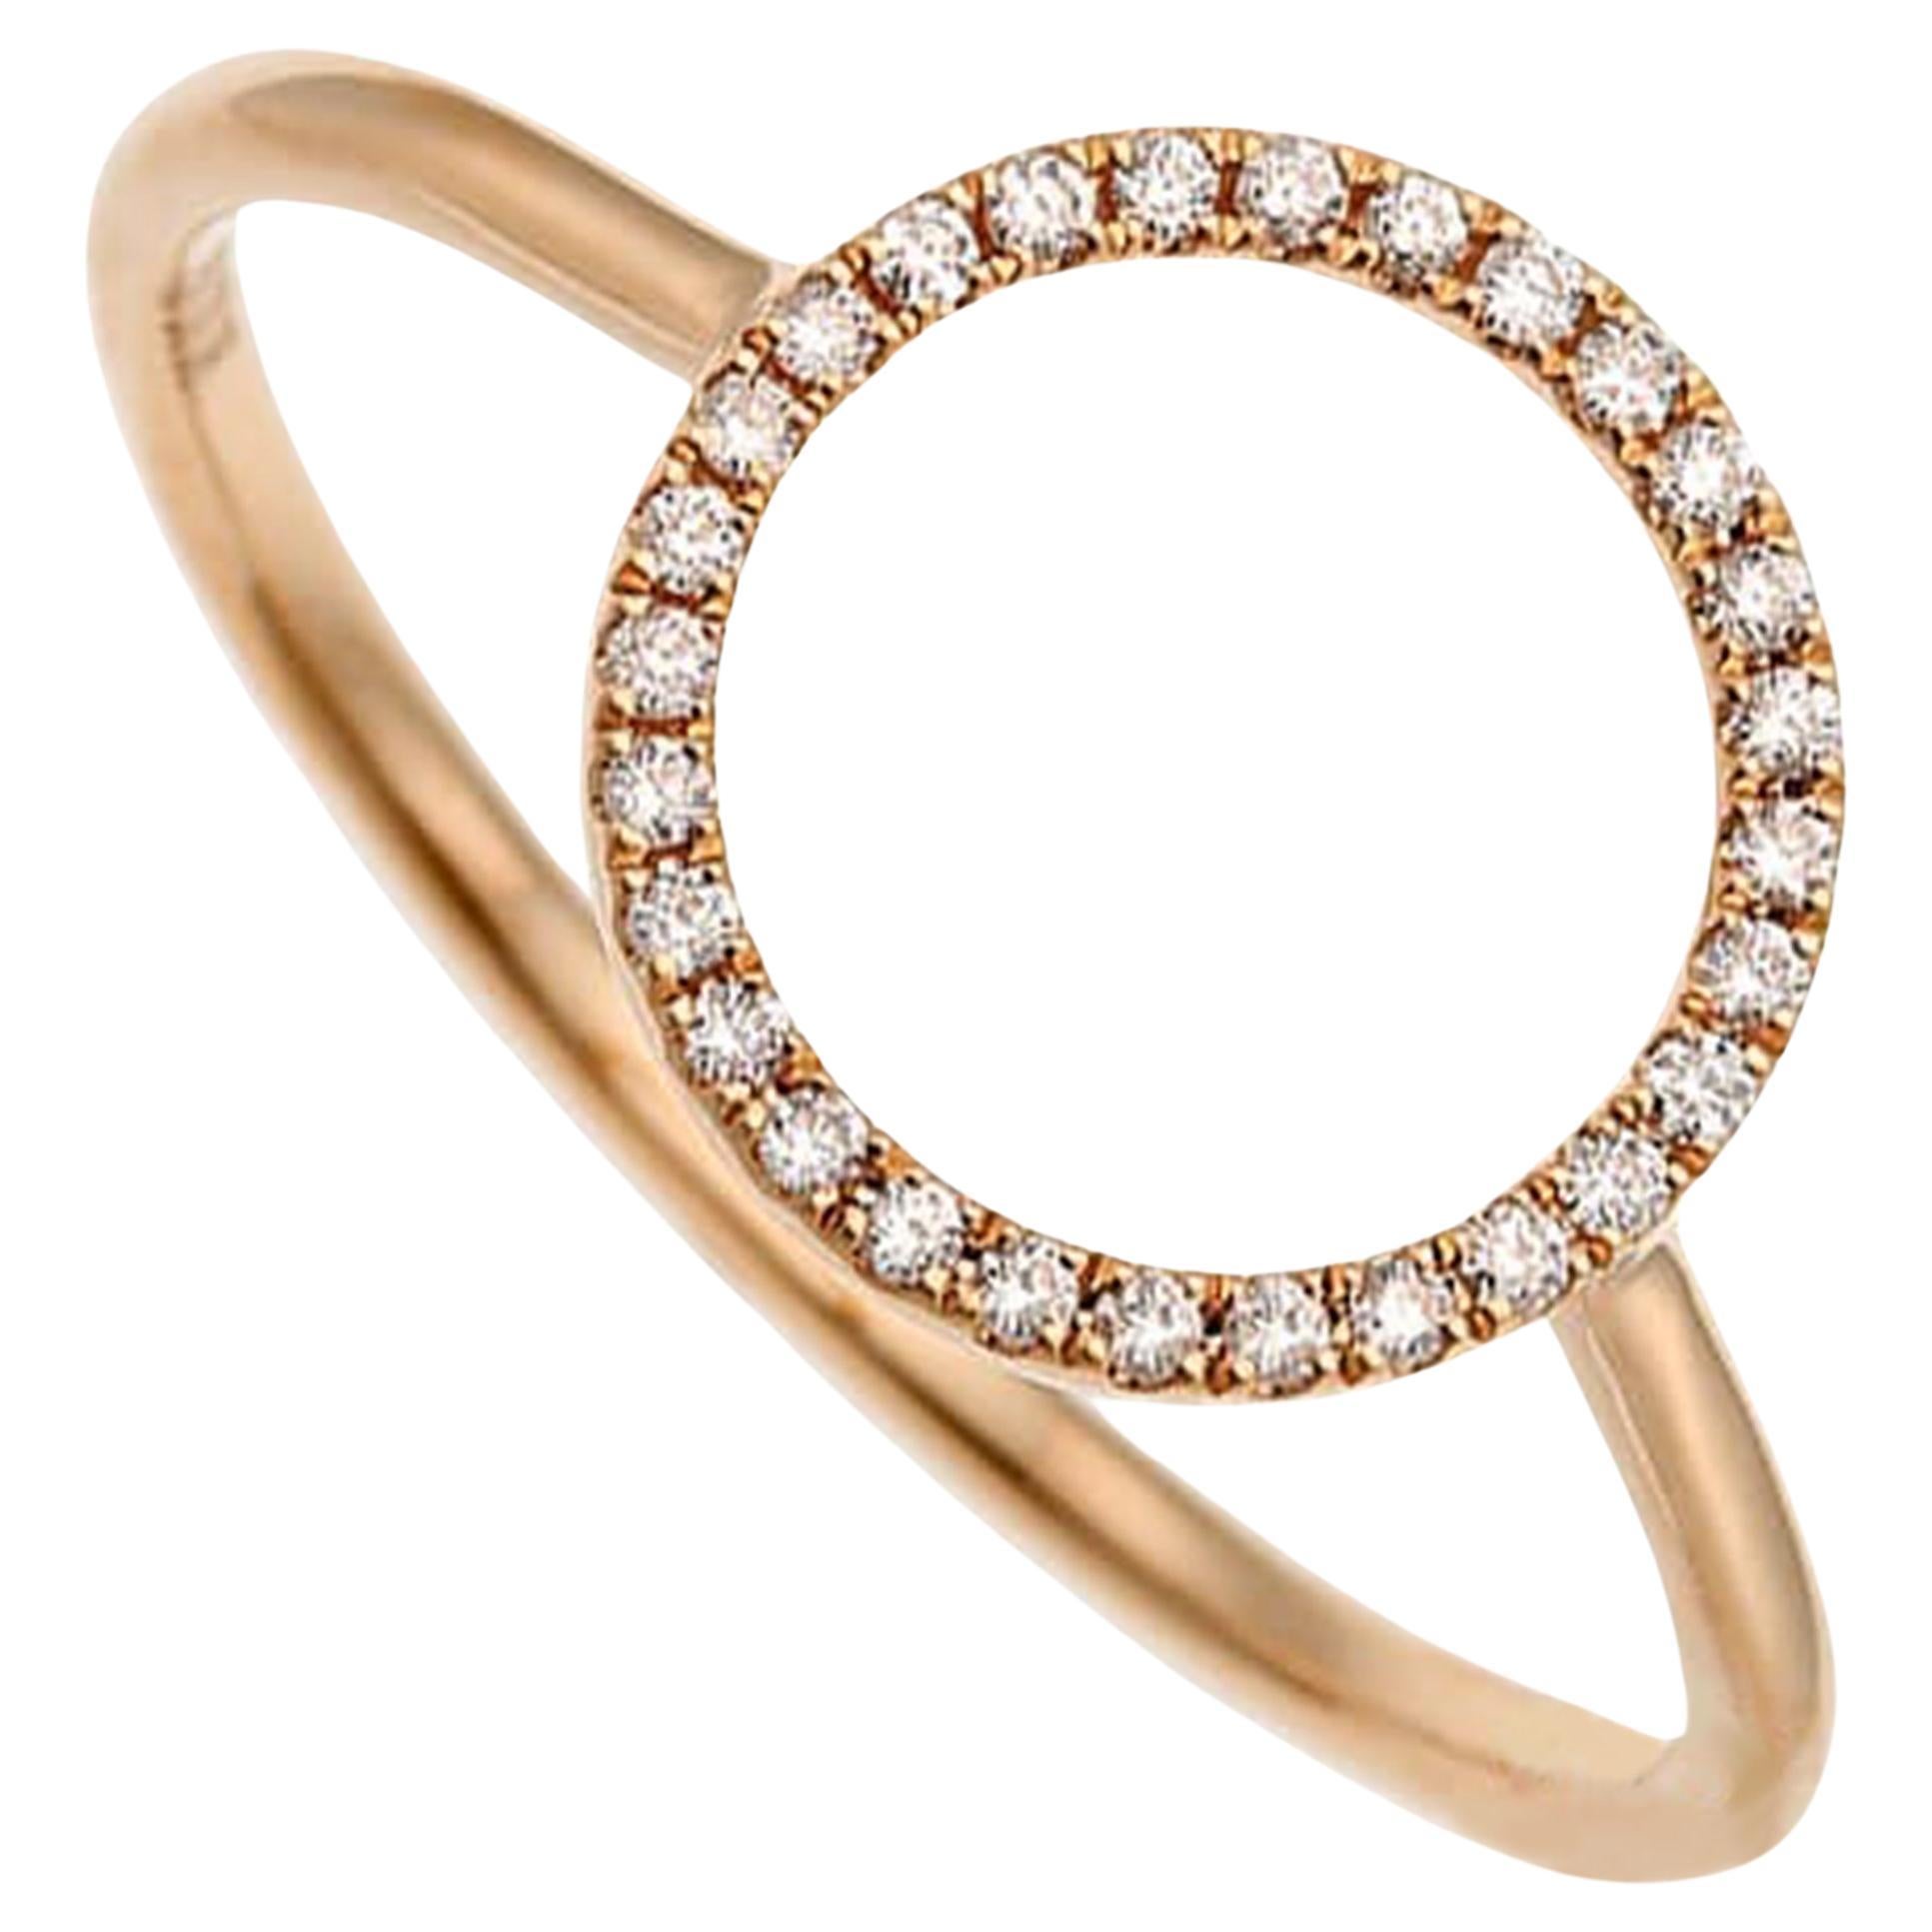 Designer 18K Pink Gold Diamond Circle Ring, 0.08ct, Size 6.75 For Sale